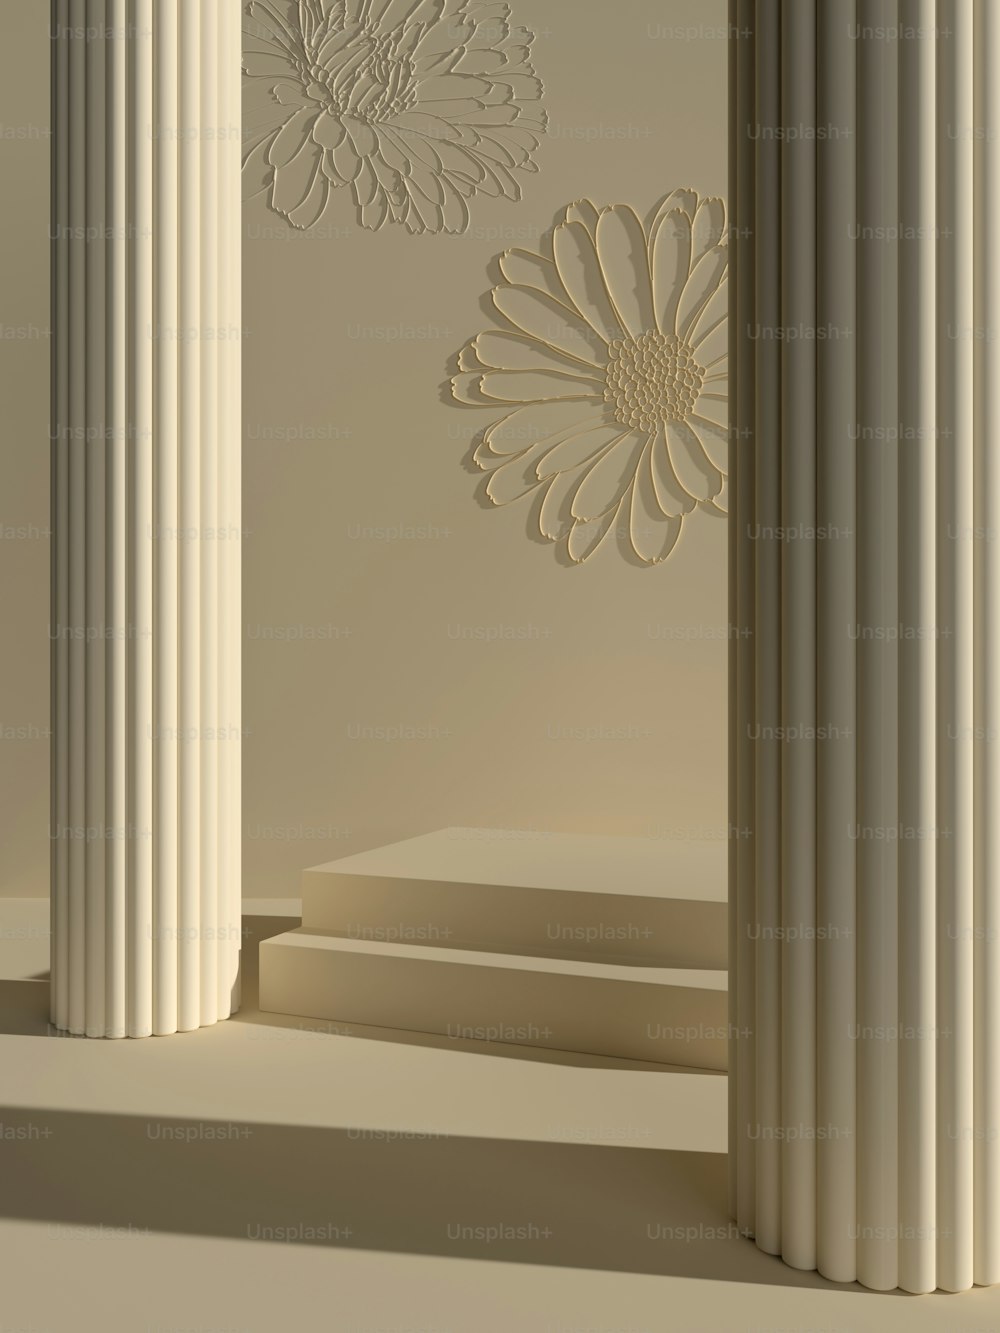 um grupo de pilares brancos com uma flor na parede